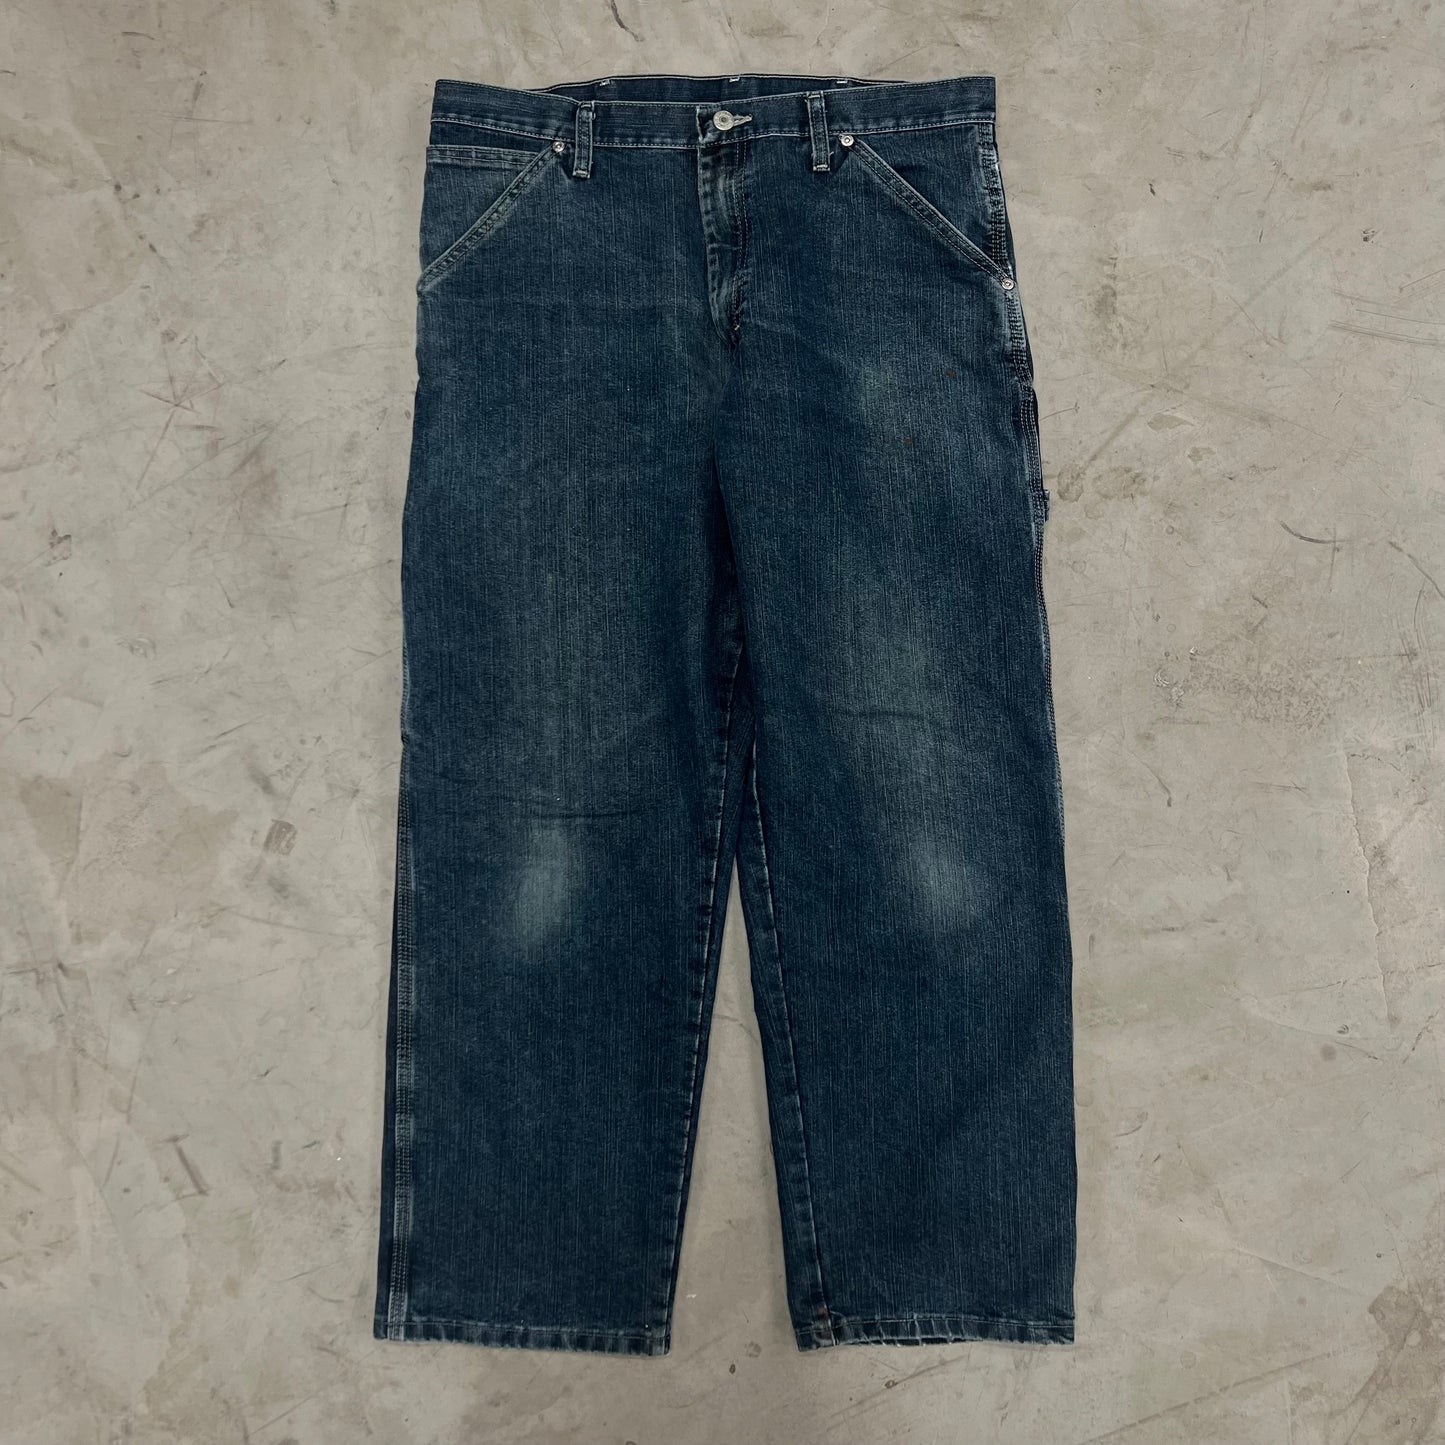 VTG Dark Wash Wrangler Carpenter Jeans